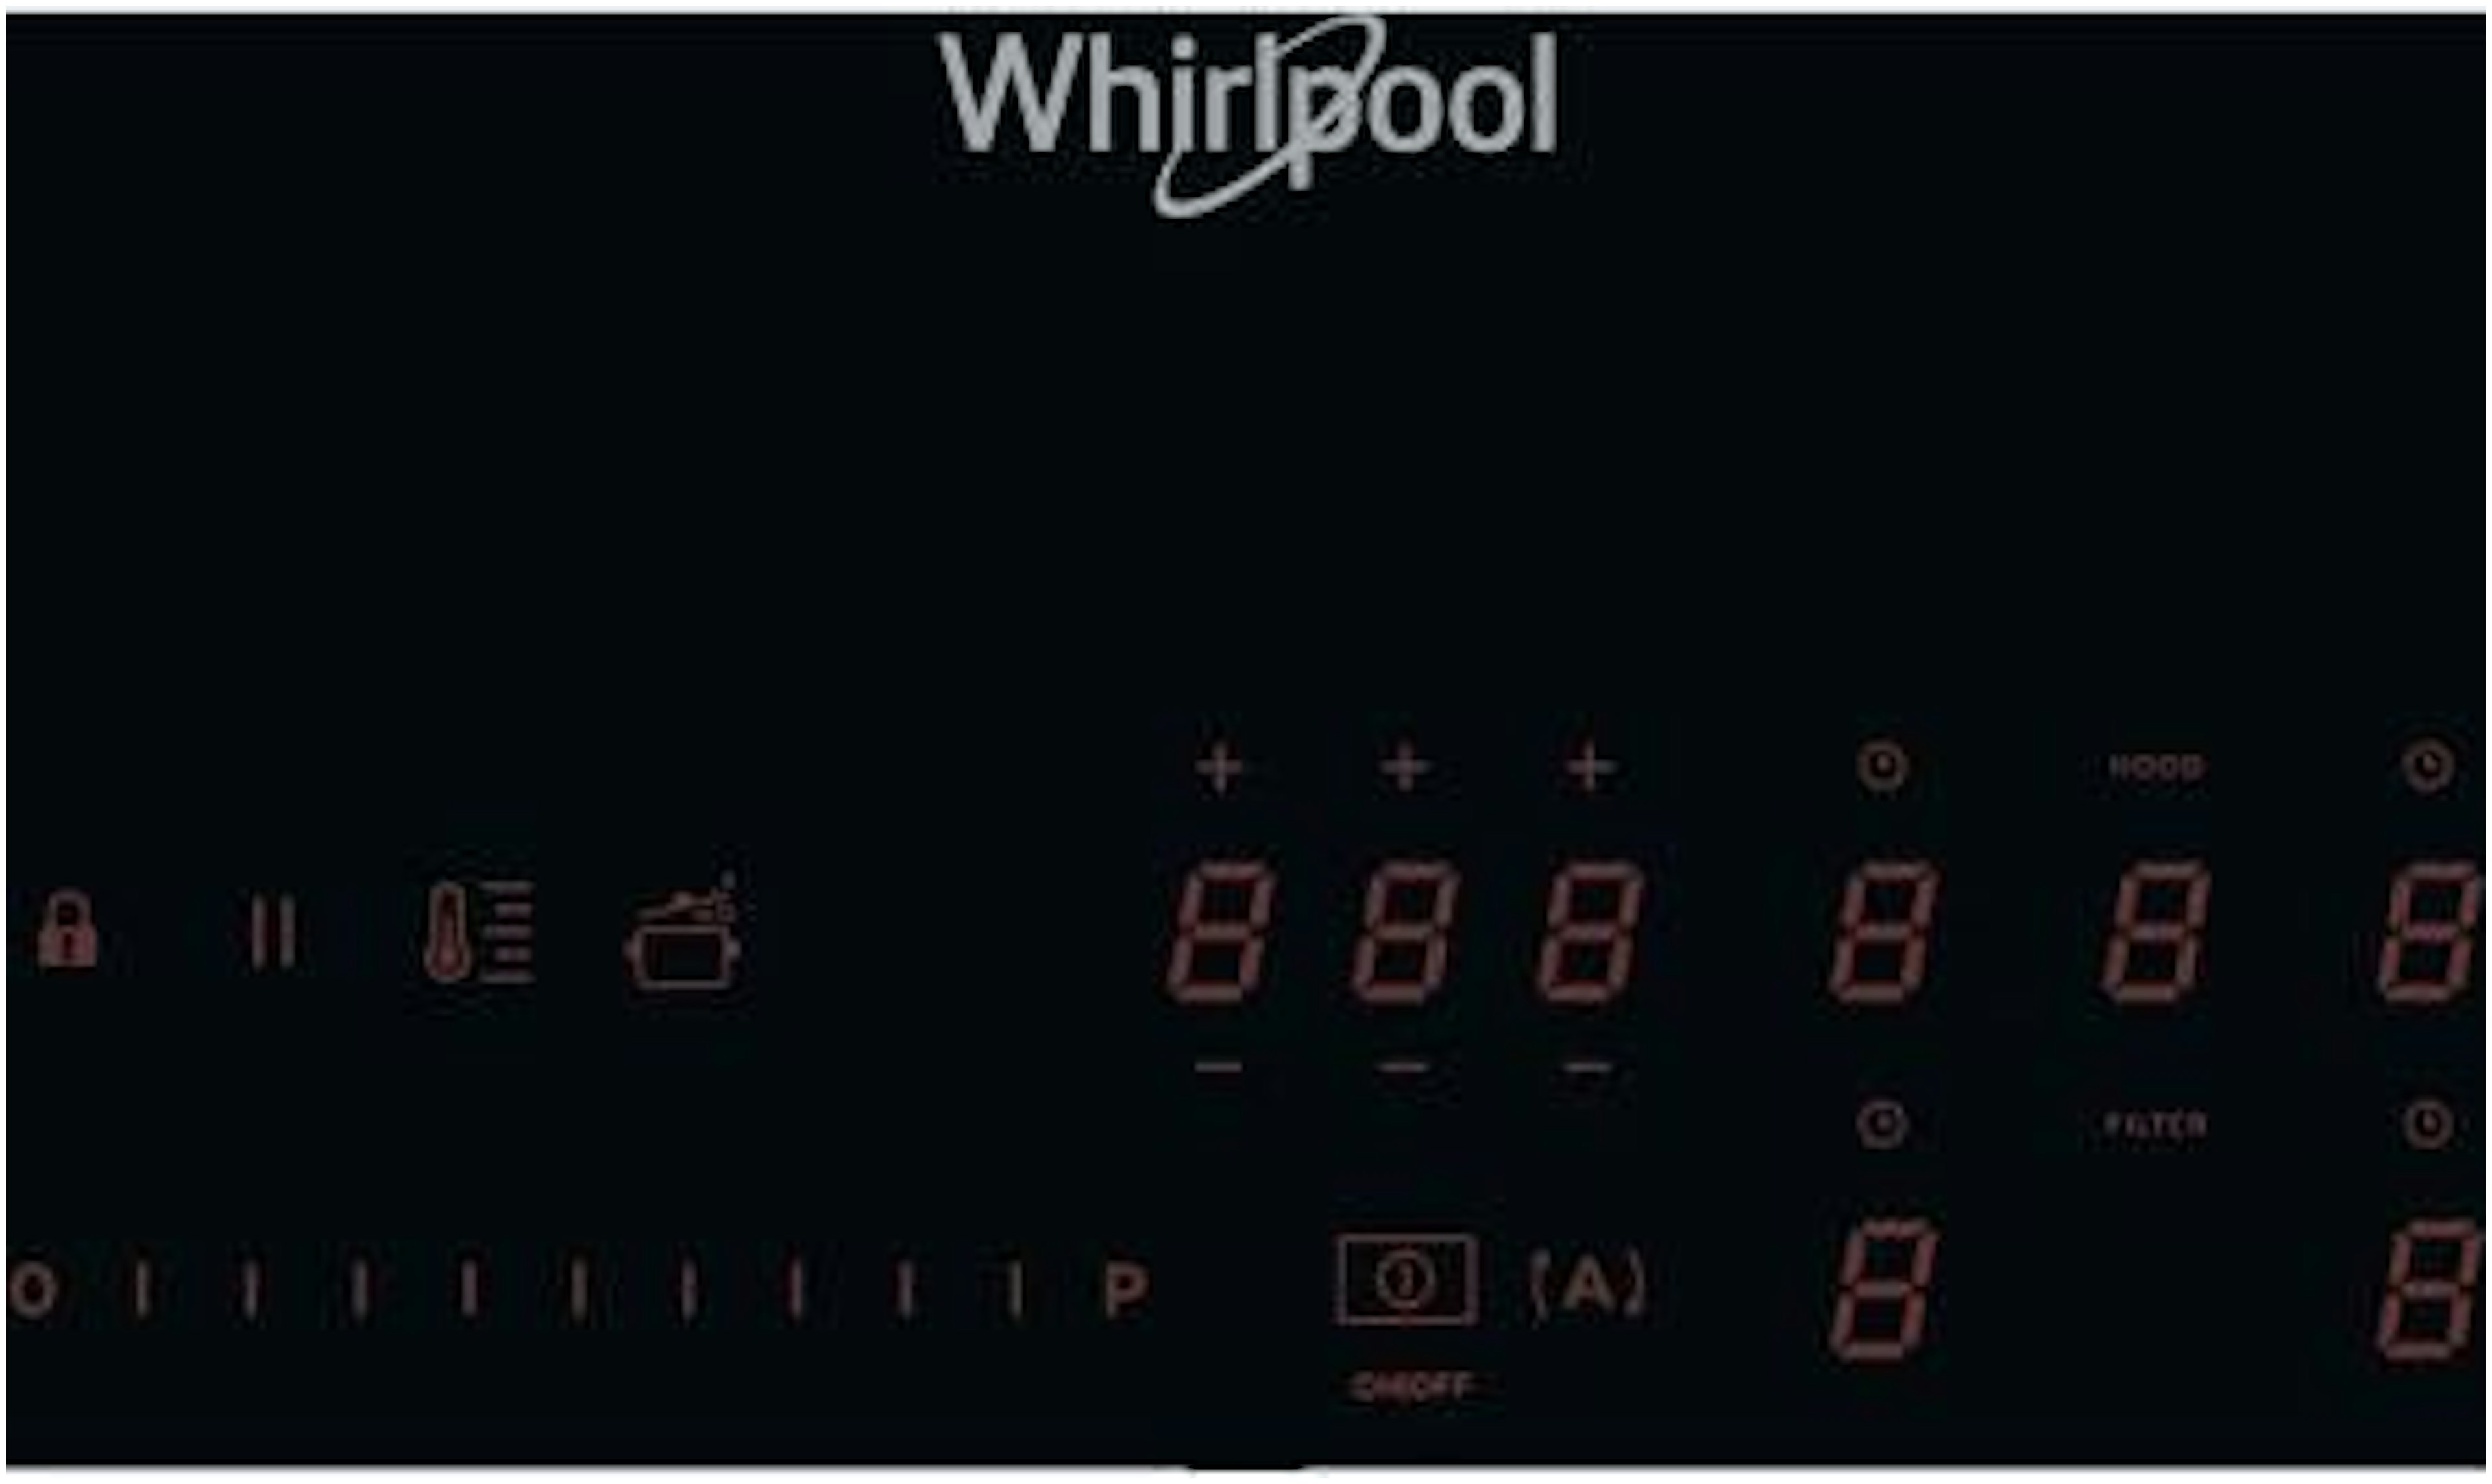 WVH92K/1 Whirlpool afbeelding 2